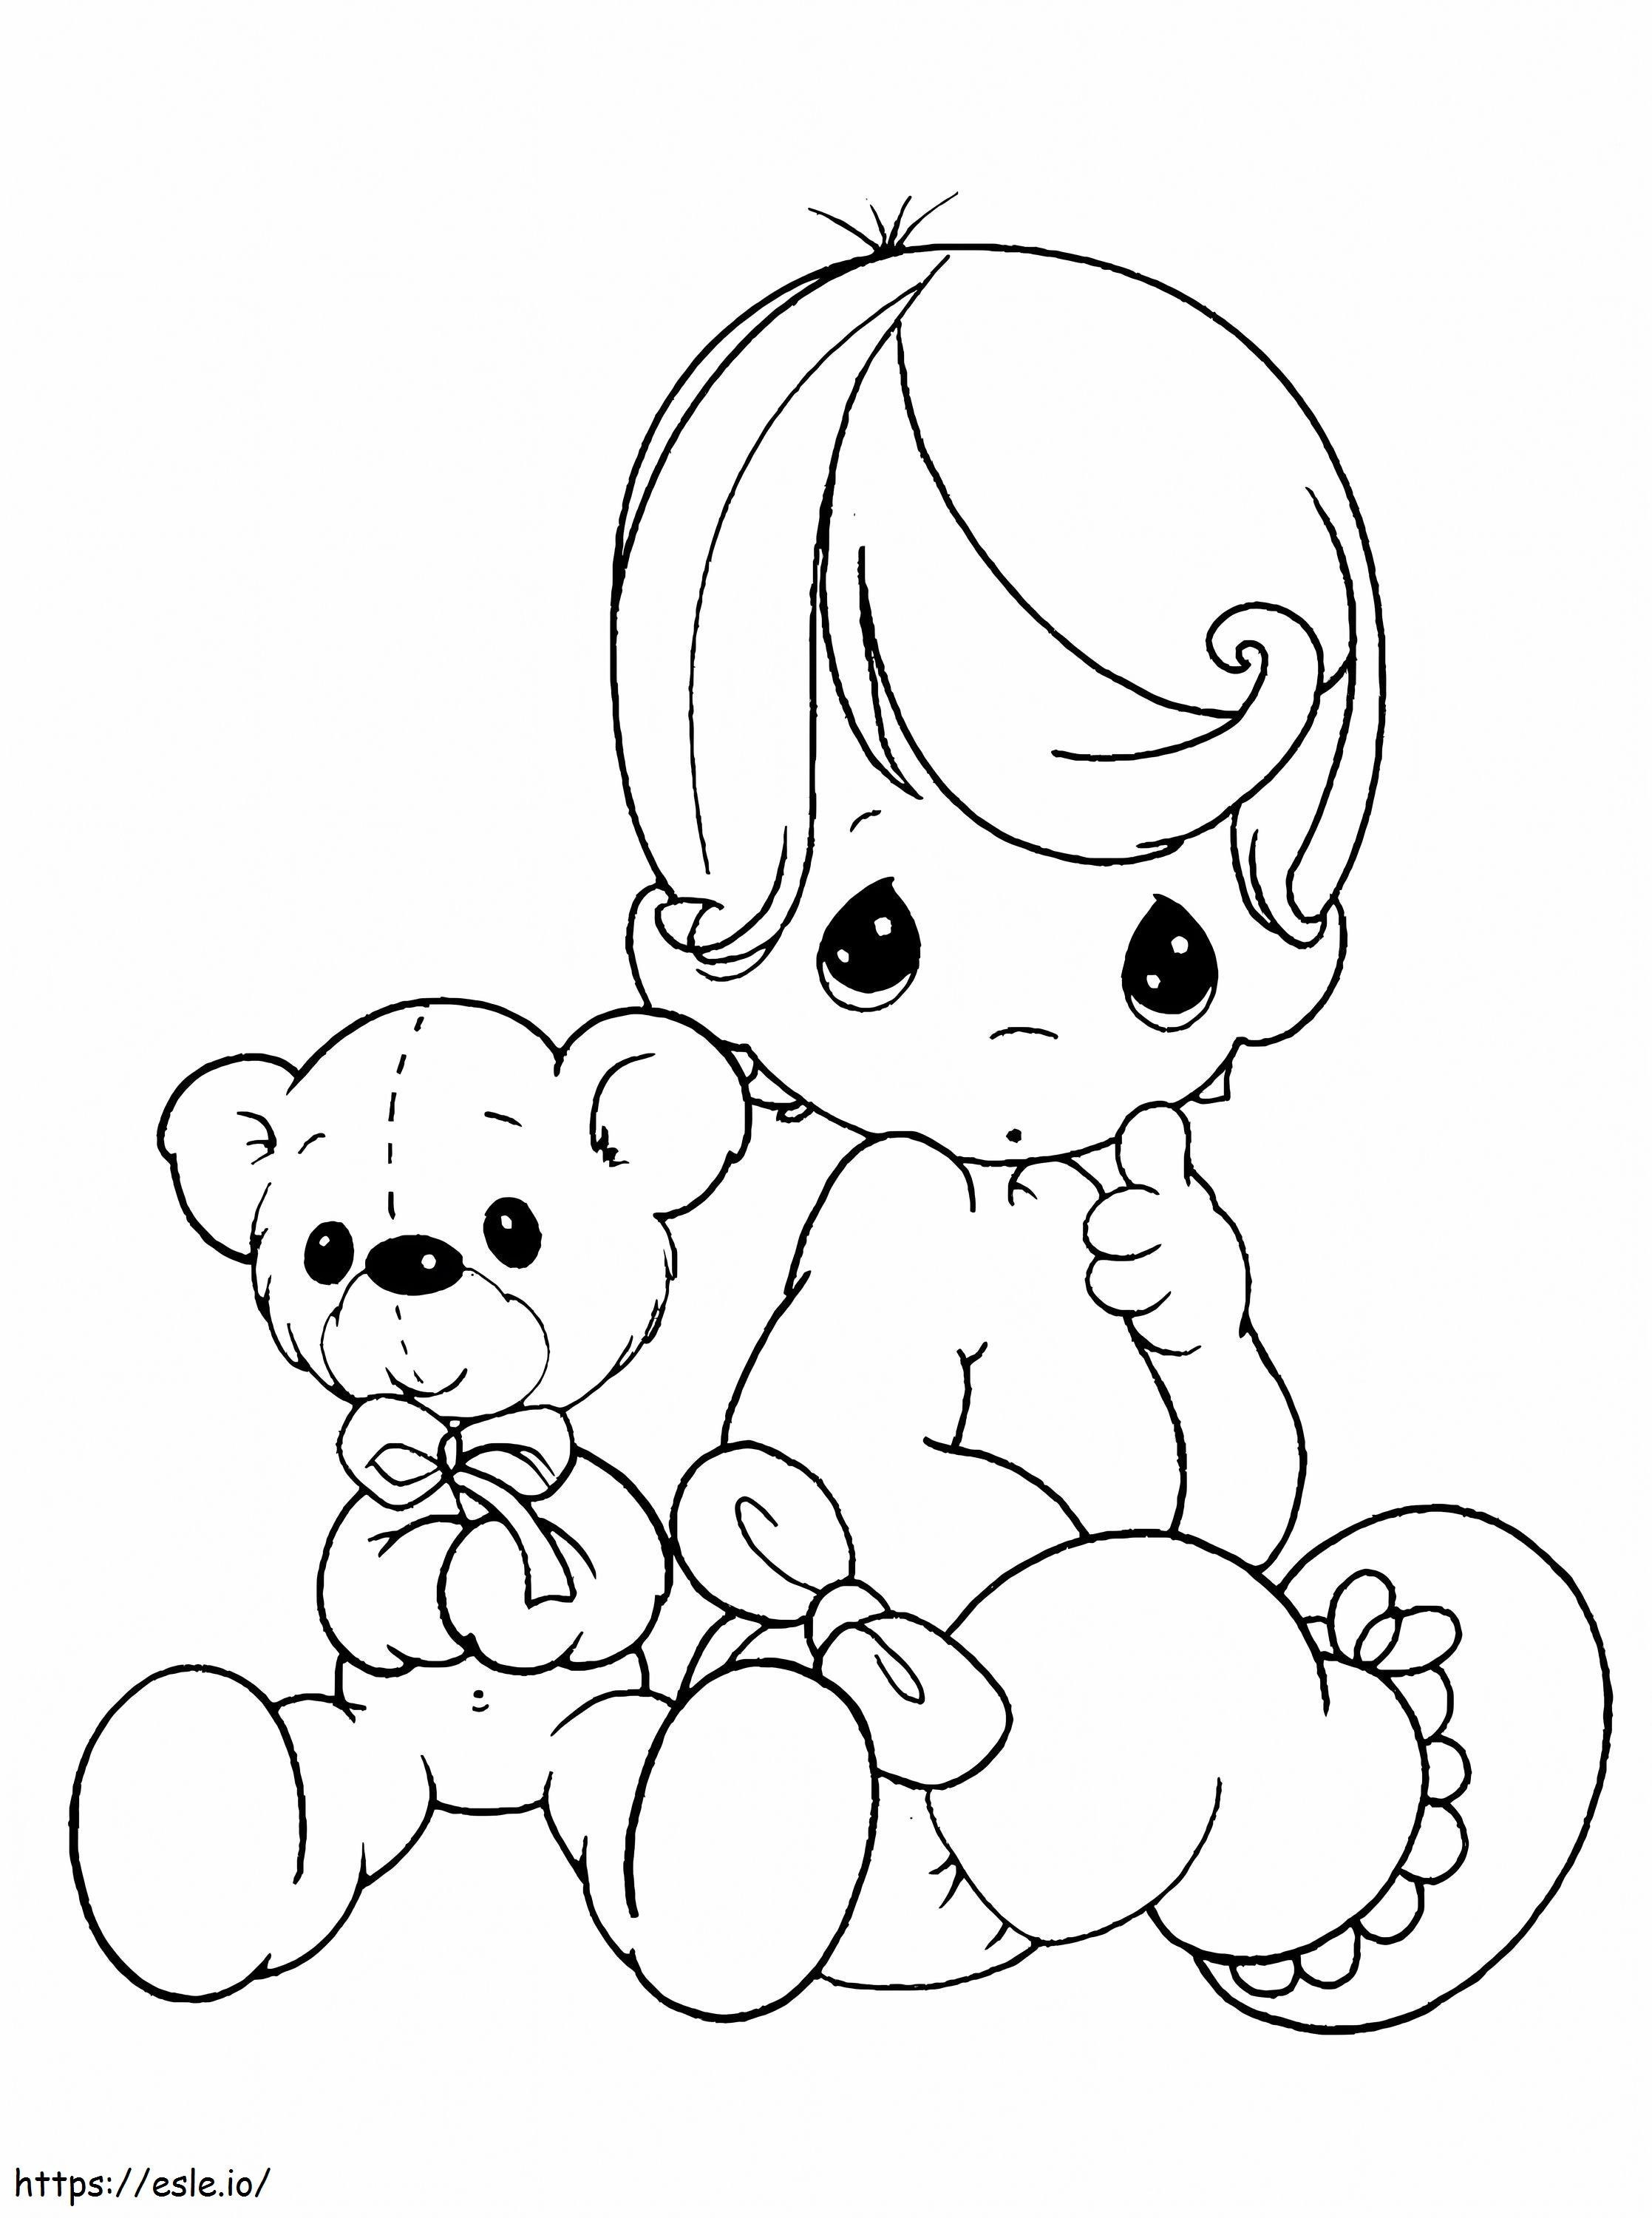 Baby Junge und Teddybär ausmalbilder